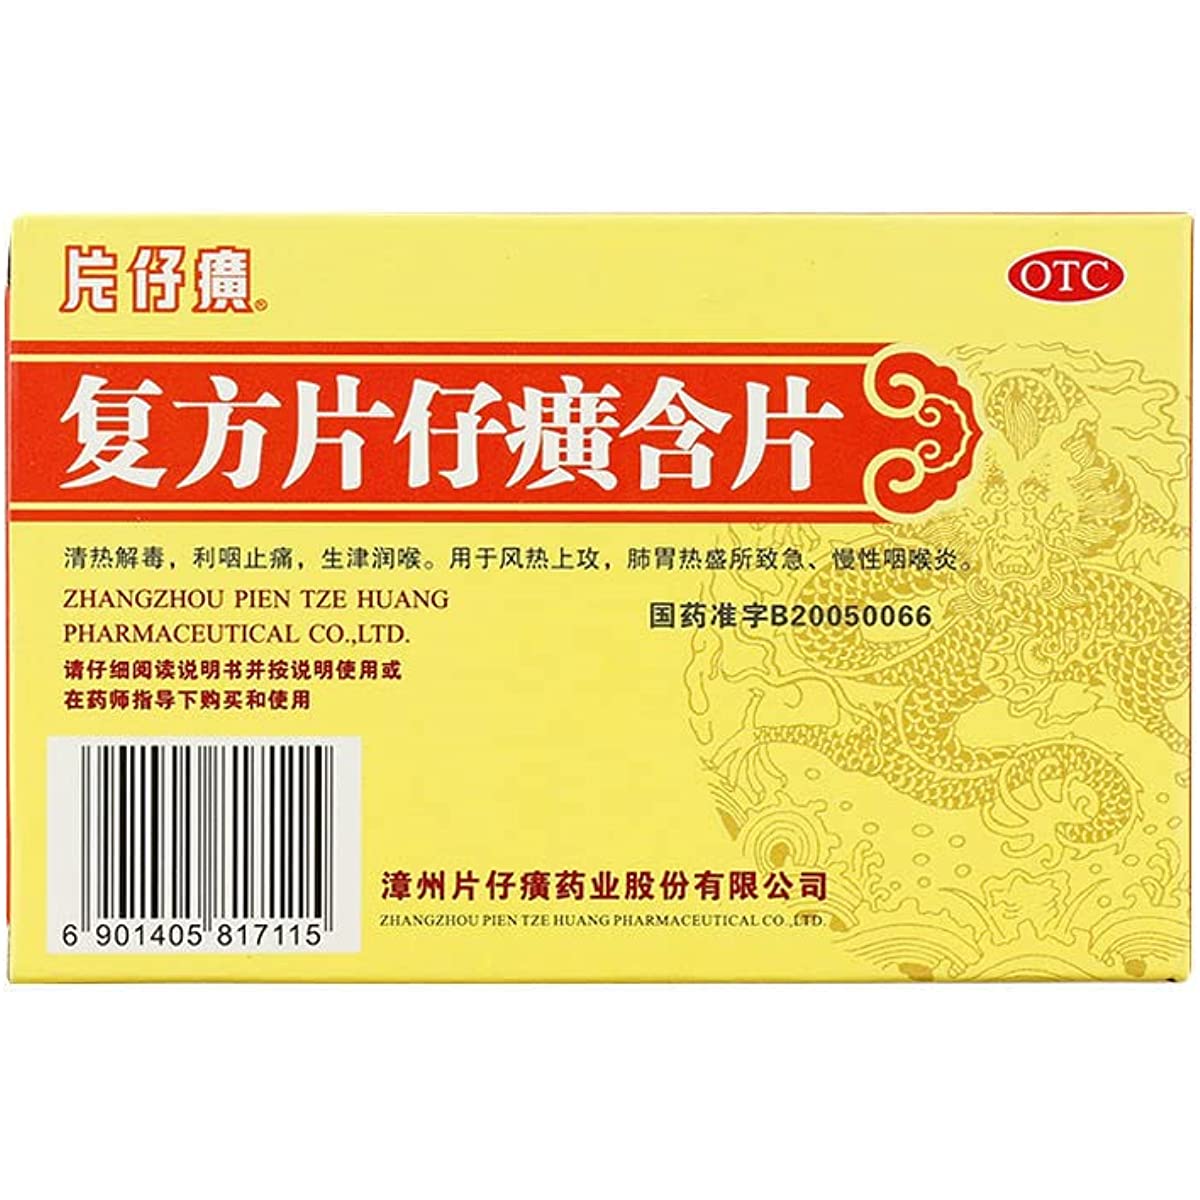 2 Boxes,  Fufang Pianzaihuang Hanpian 24 Tablets / Box 复方片仔癀含片